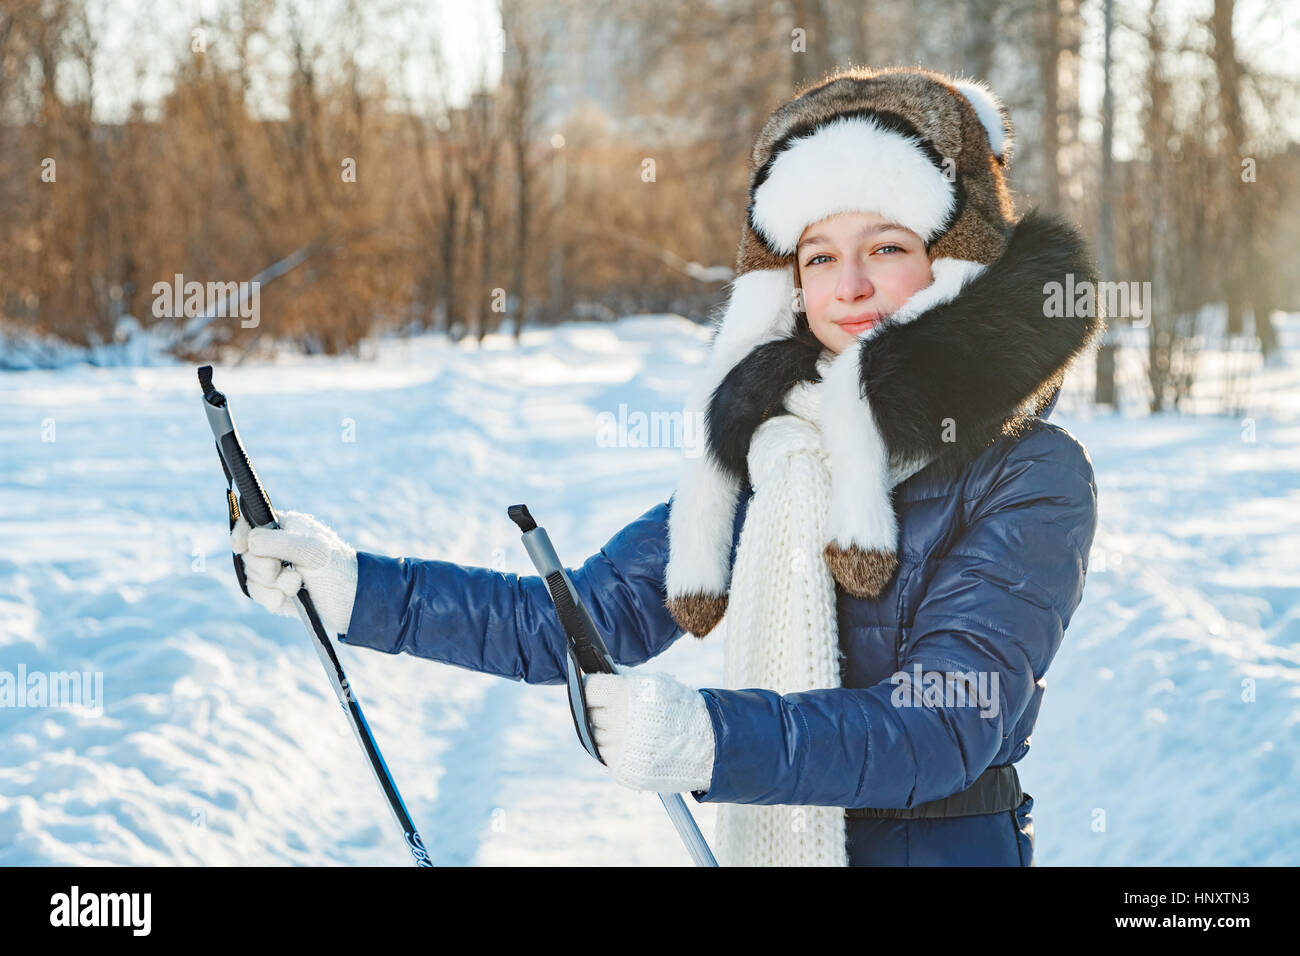 Langlaufen Frau tun klassischen nordischen Skilanglauf im Trail Spuren im tief verschneiten Wald Stockfoto